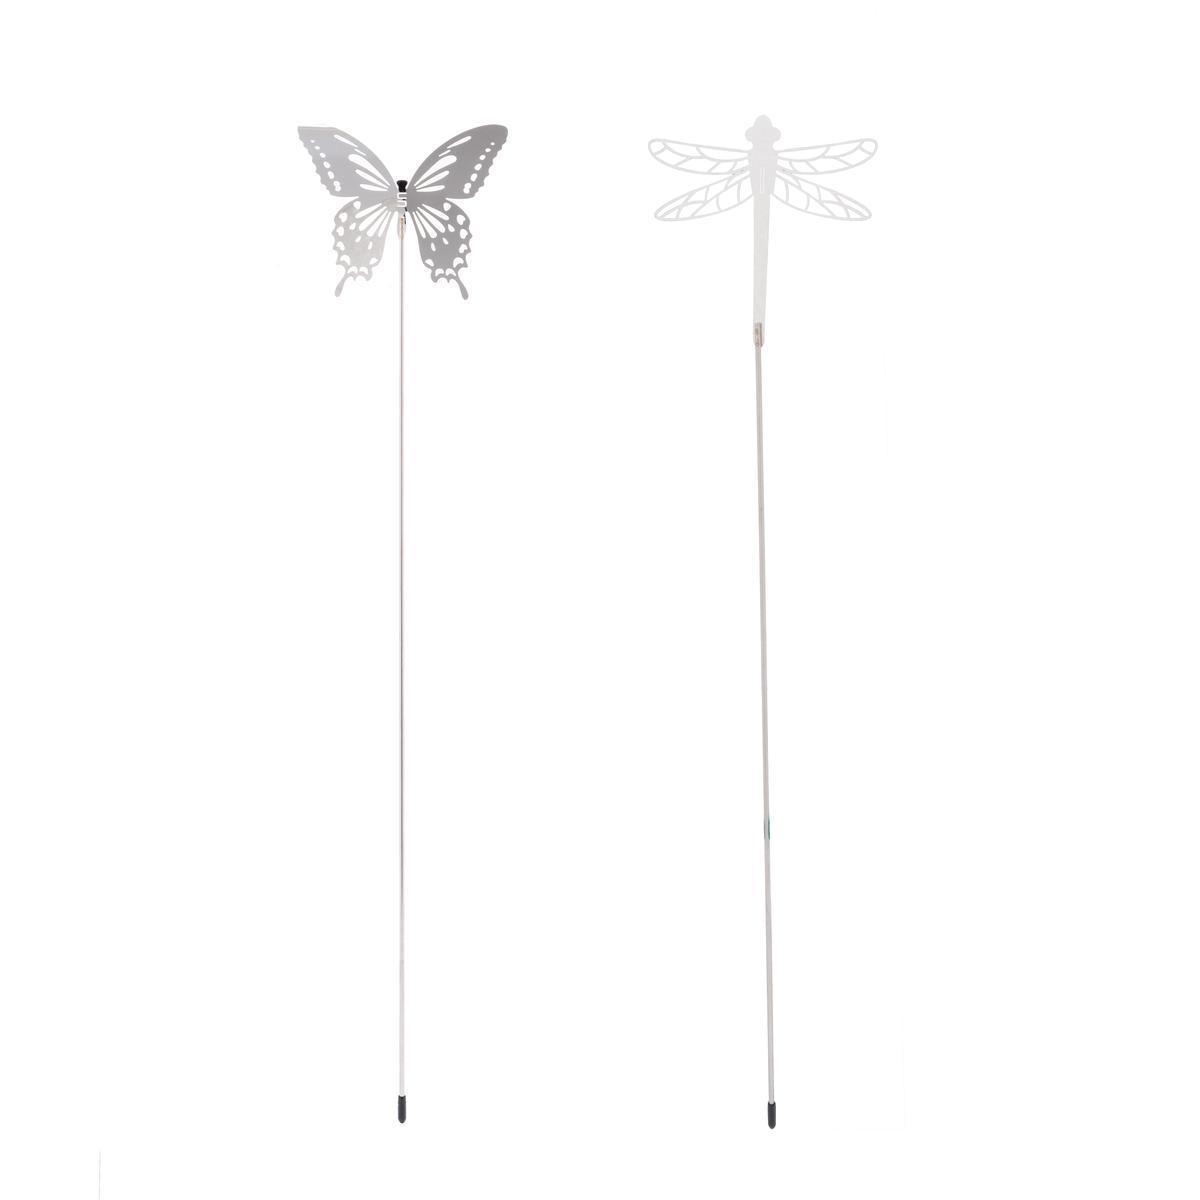 Insectes sur pique - H 60 cm - Différents modèles - MOOREA